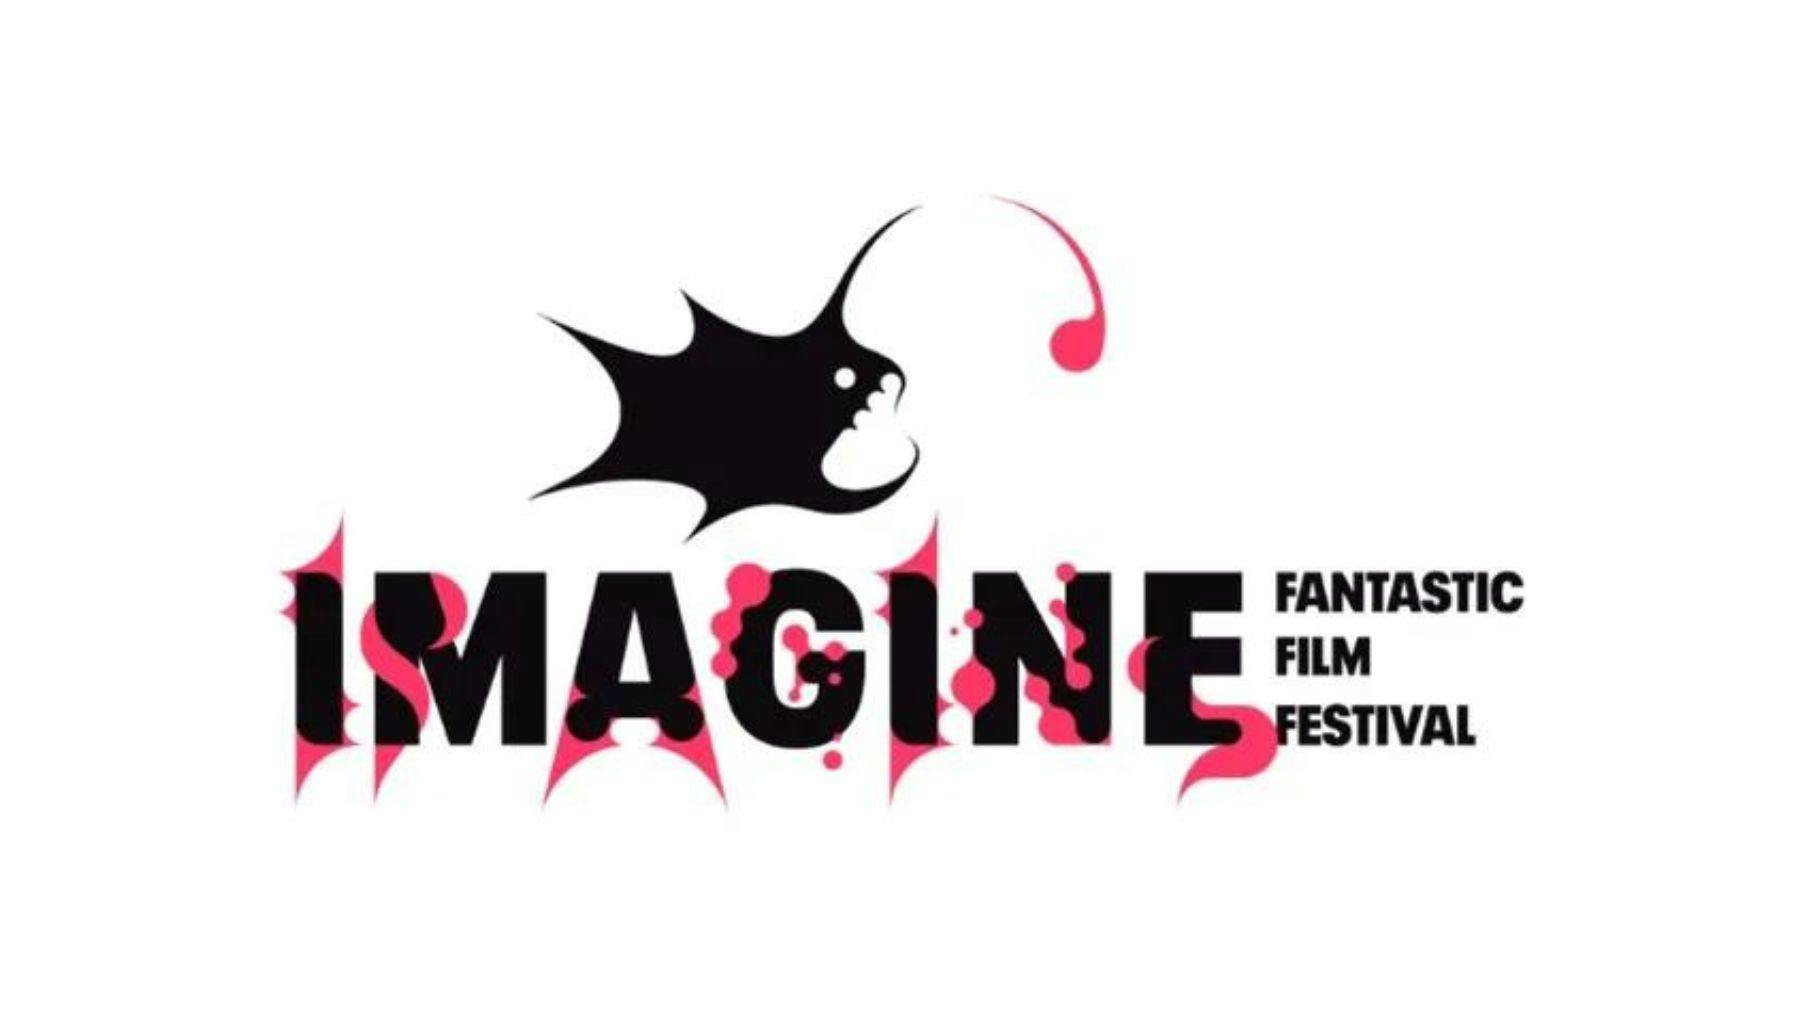 Imagine Fantastic Film Festival